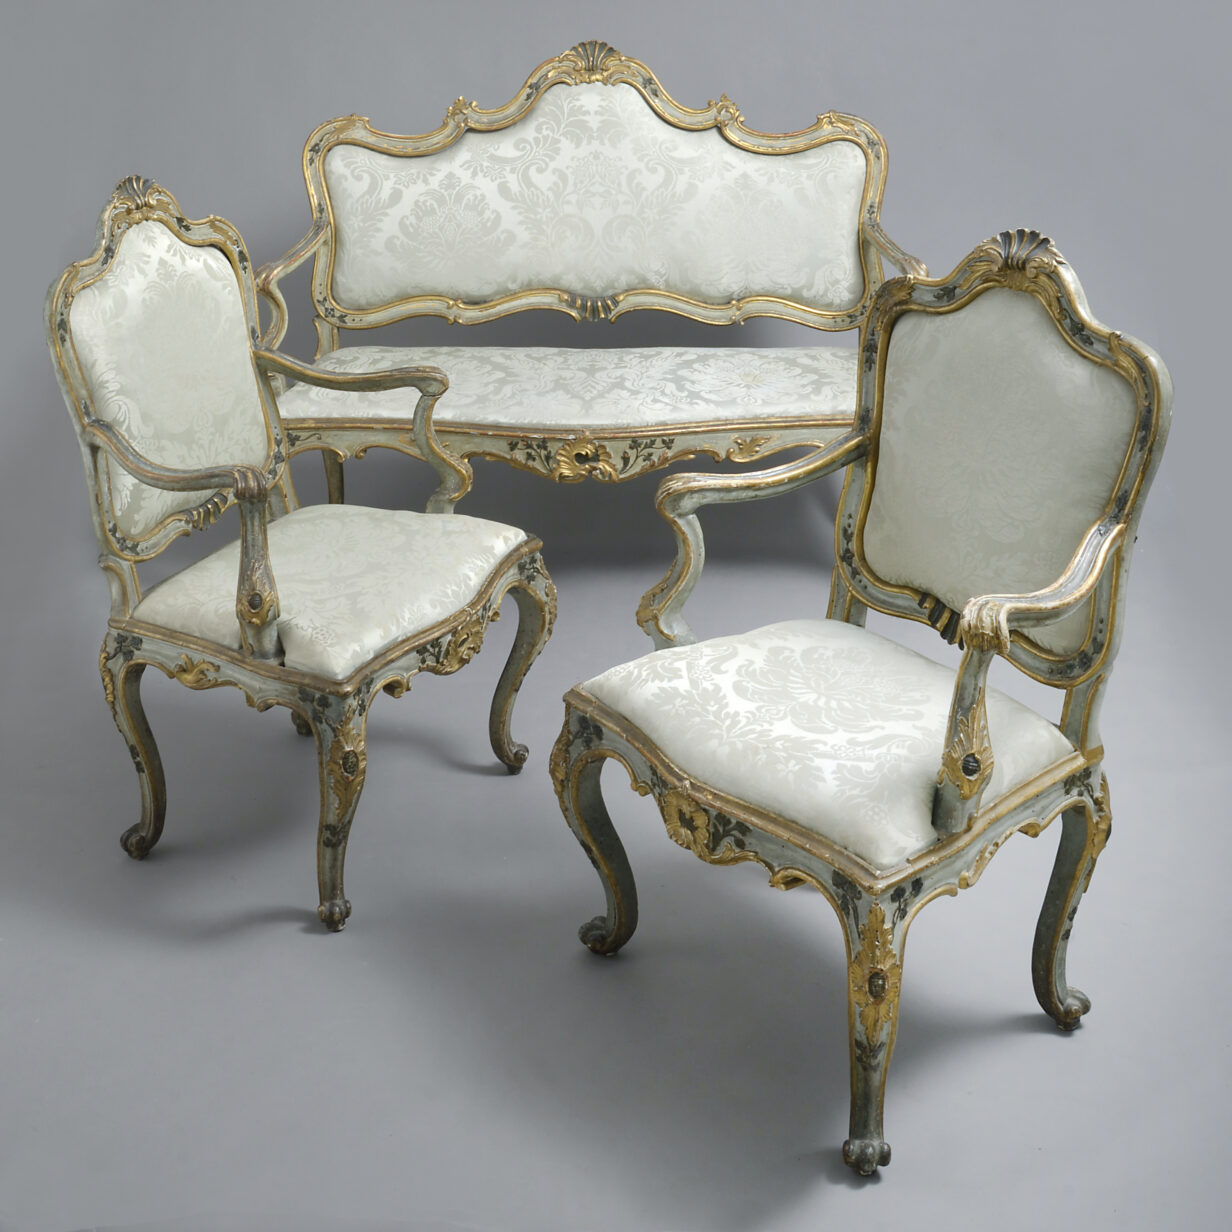 Venetian seating